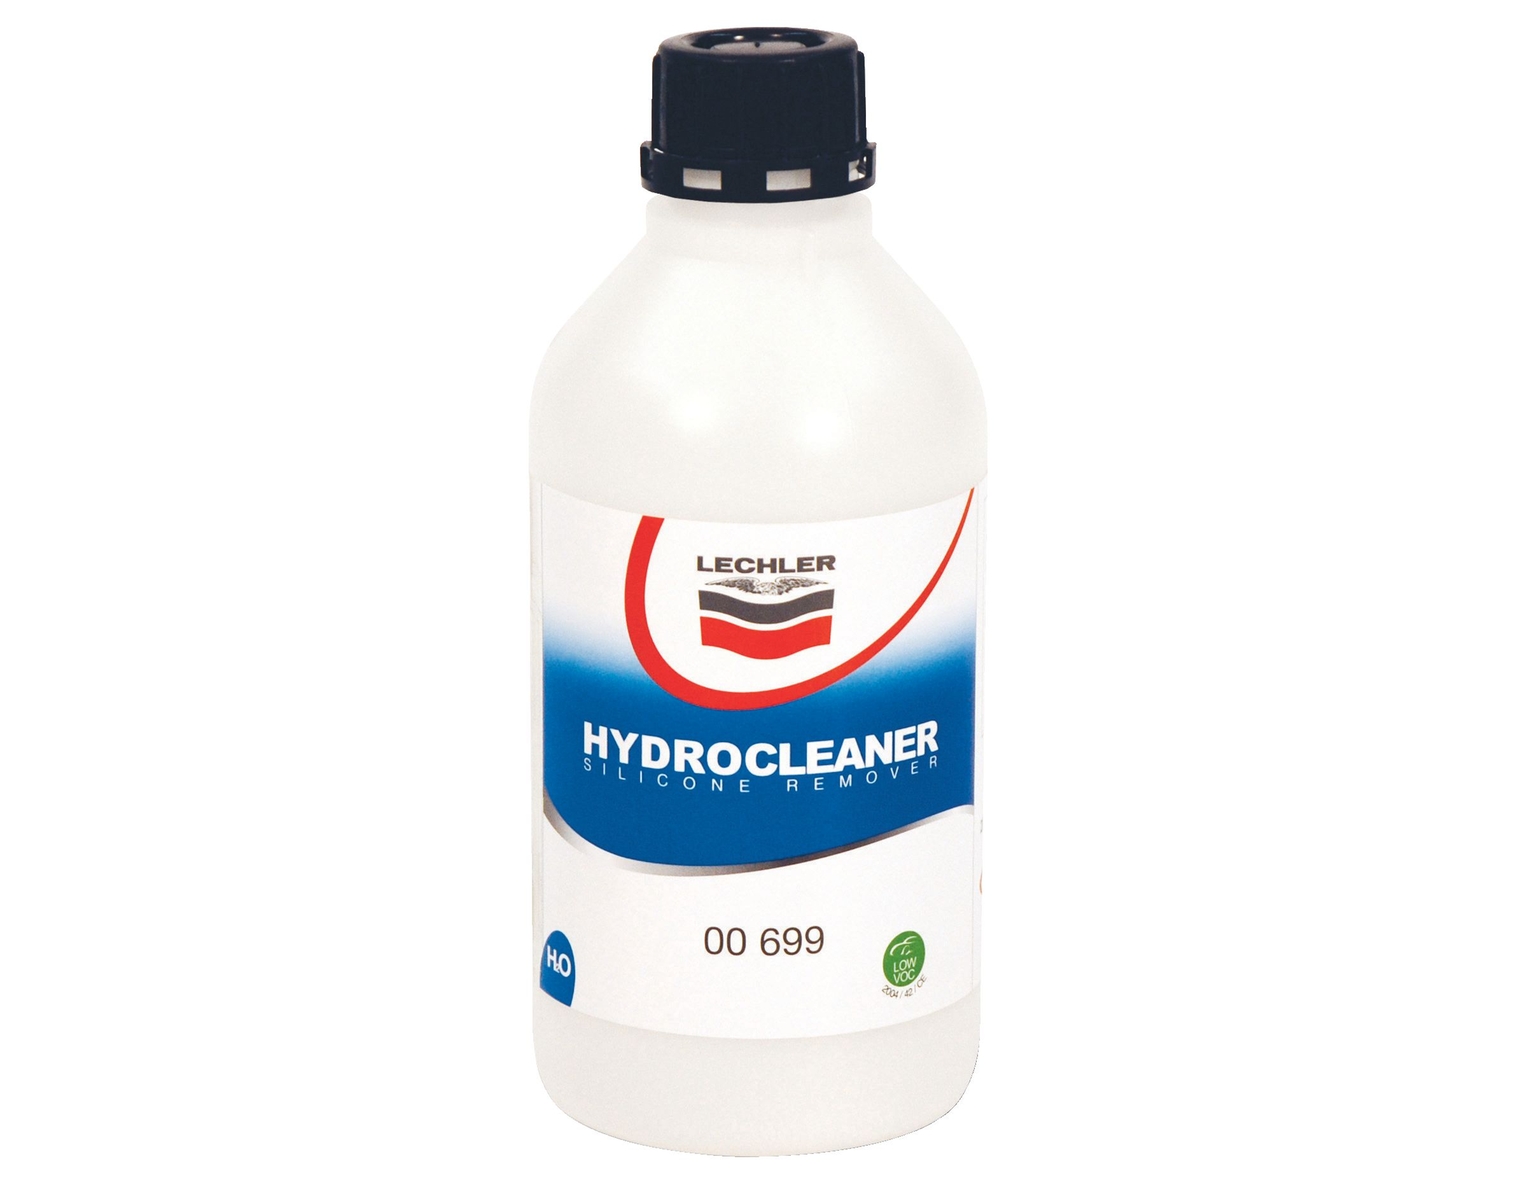 Lechler Hydrocleaner 00699 a basso contenuto OCOV, 5l